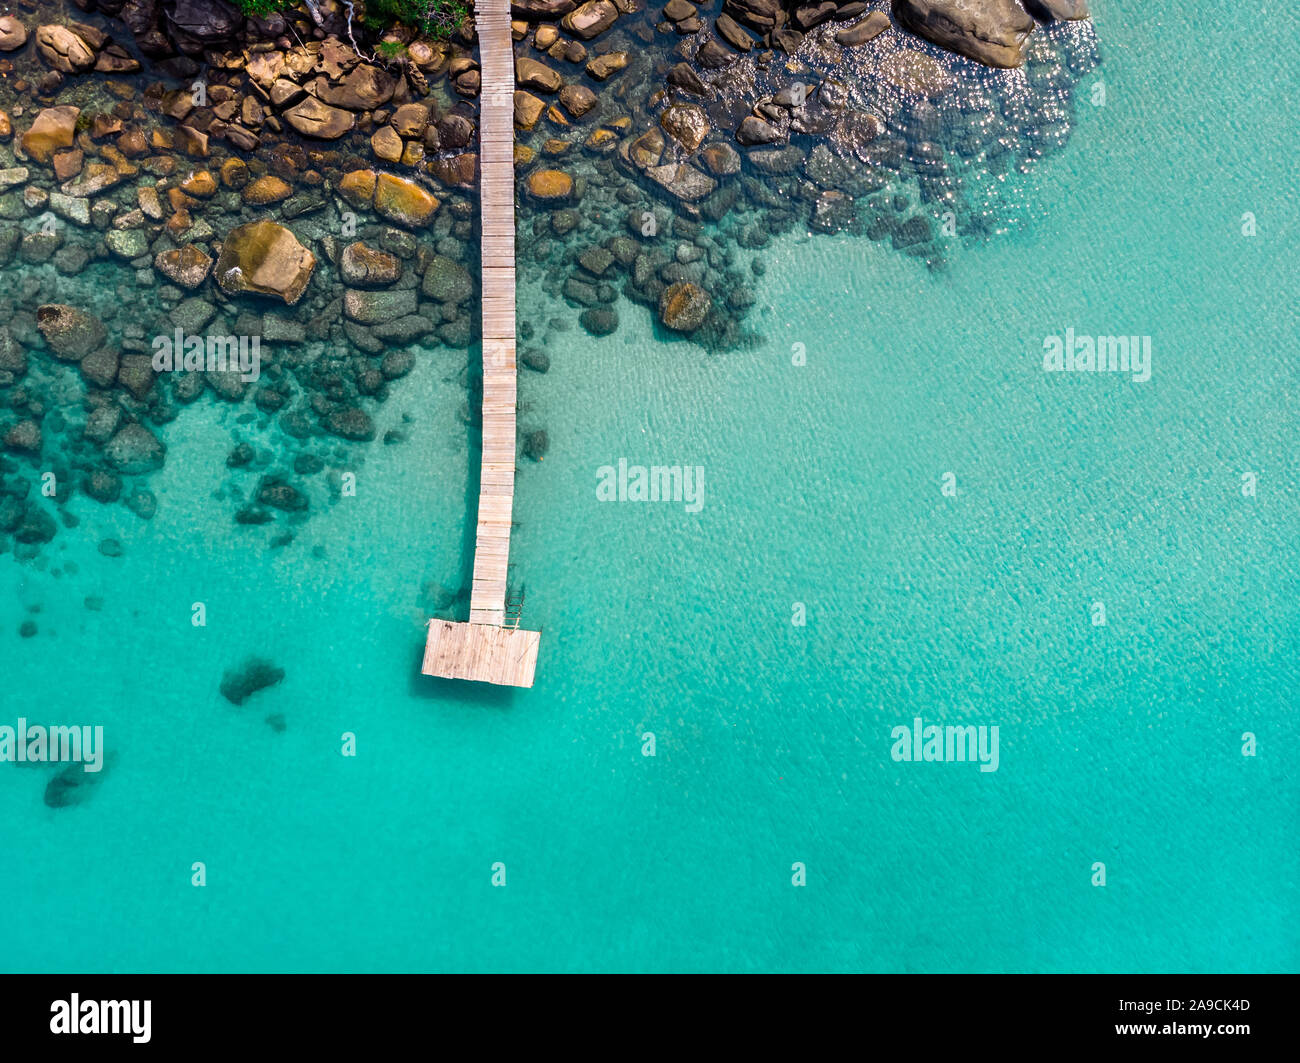 Vue aérienne de l'île de drone, beach holiday vacation destination, mer turquoise transparent avec de l'eau jetée en bois et pierres, belle para tropical Banque D'Images